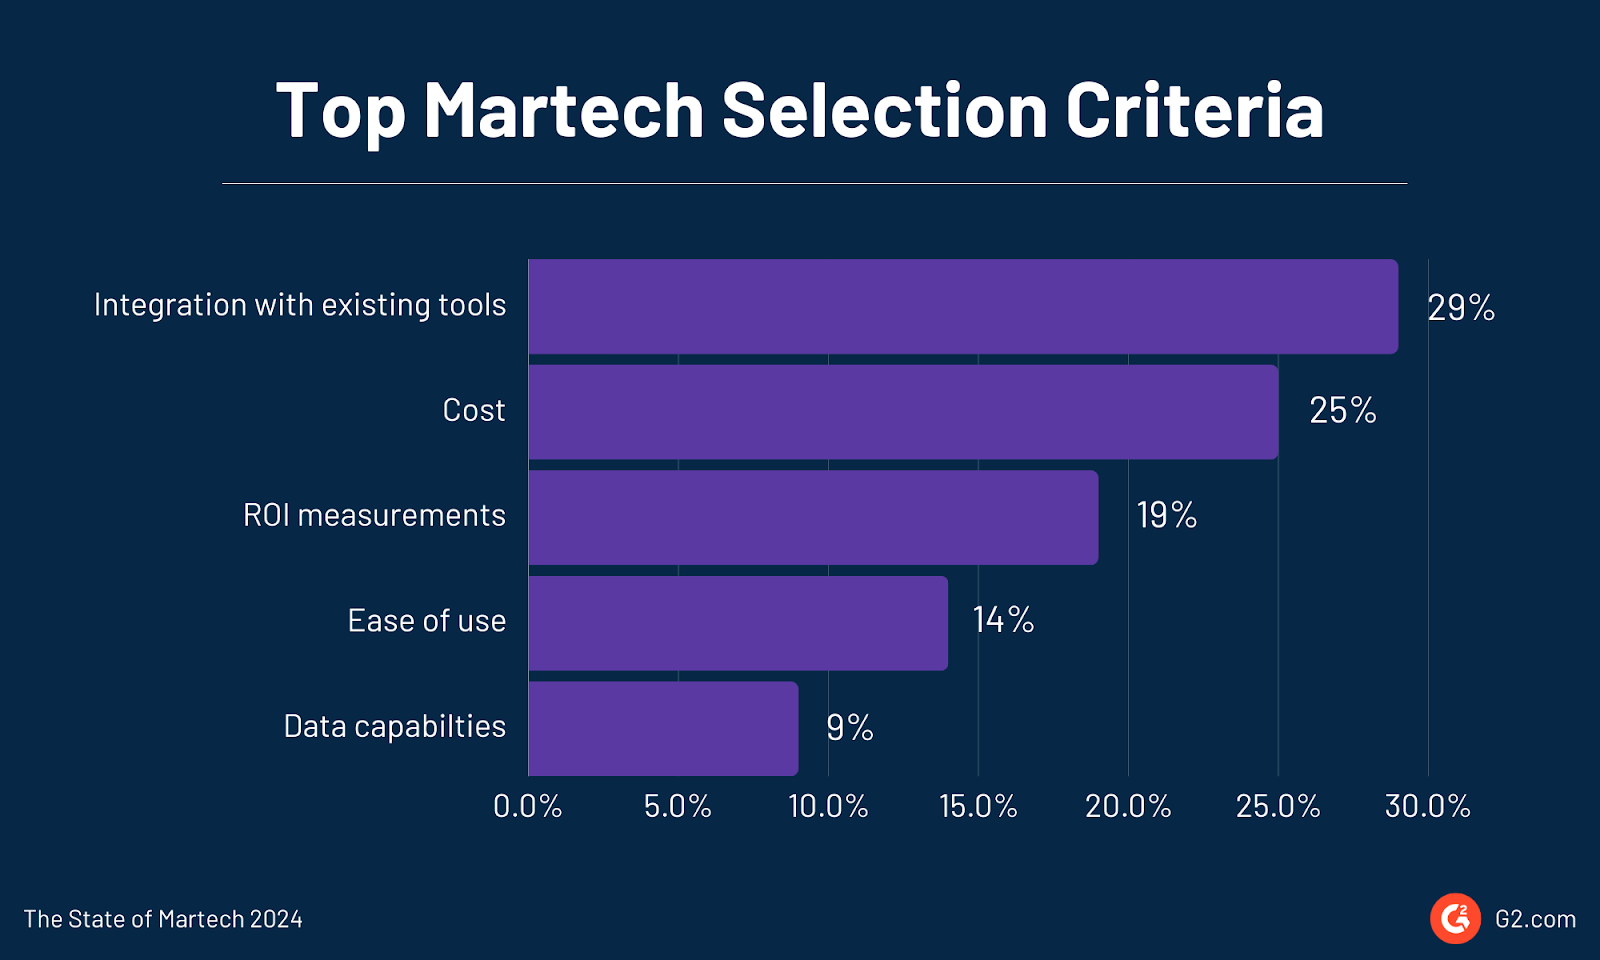 Top martech selection criteria